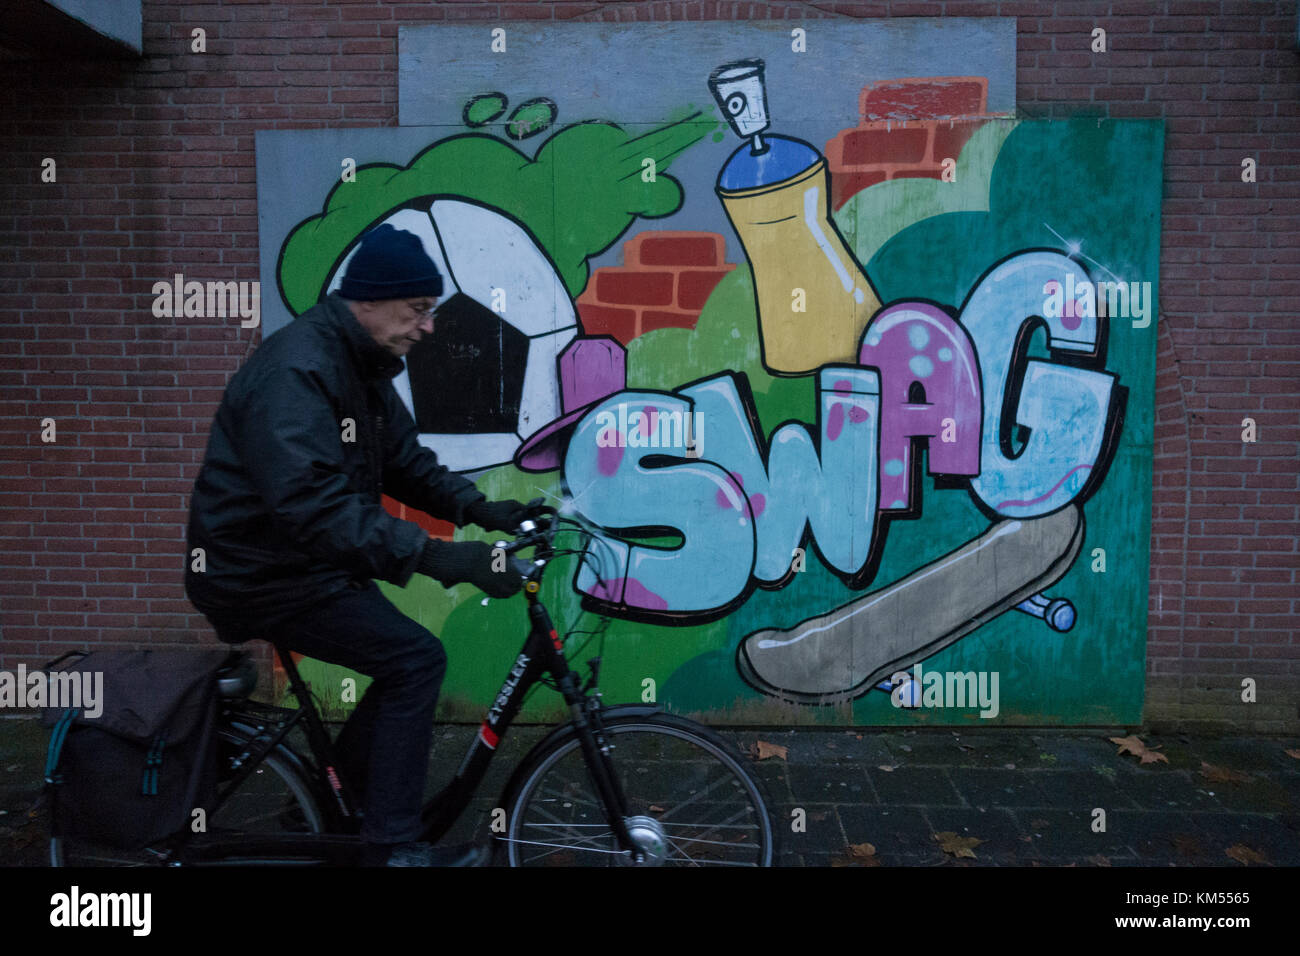 Man riding past graffiti wall Stock Photo